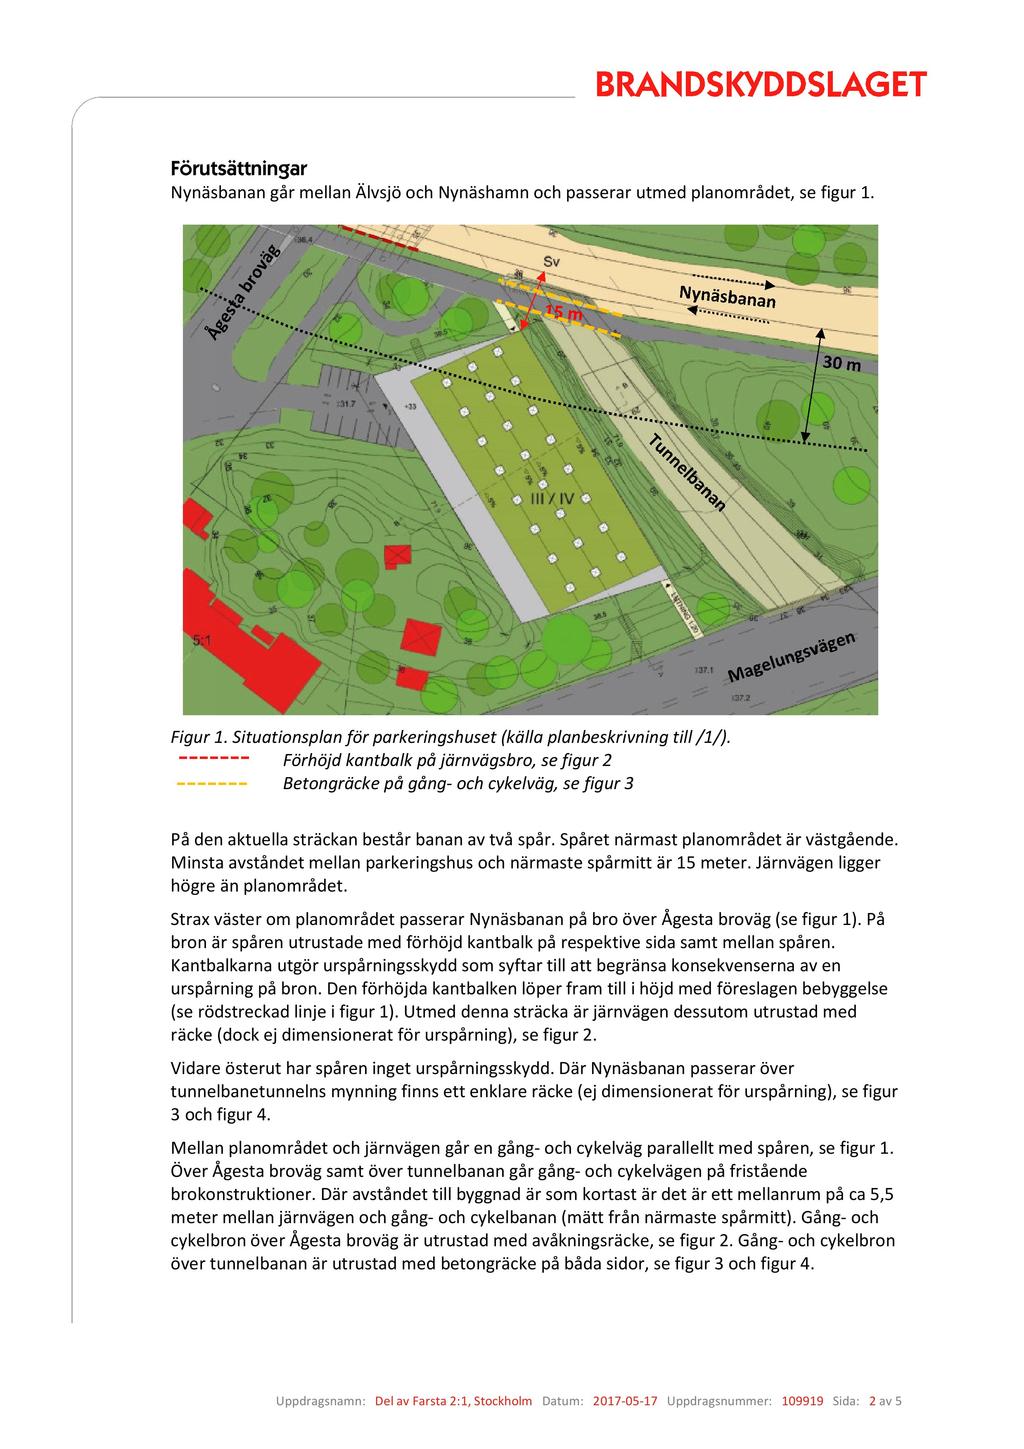 Förutsättningar Nynäsbanan går mellan Älvsjö och Nynäshamn och pass erar utmed planområdet, se figur 1. Figur 1. Situationsplan för parkeringshuset (källa planbeskrivning till /1/).